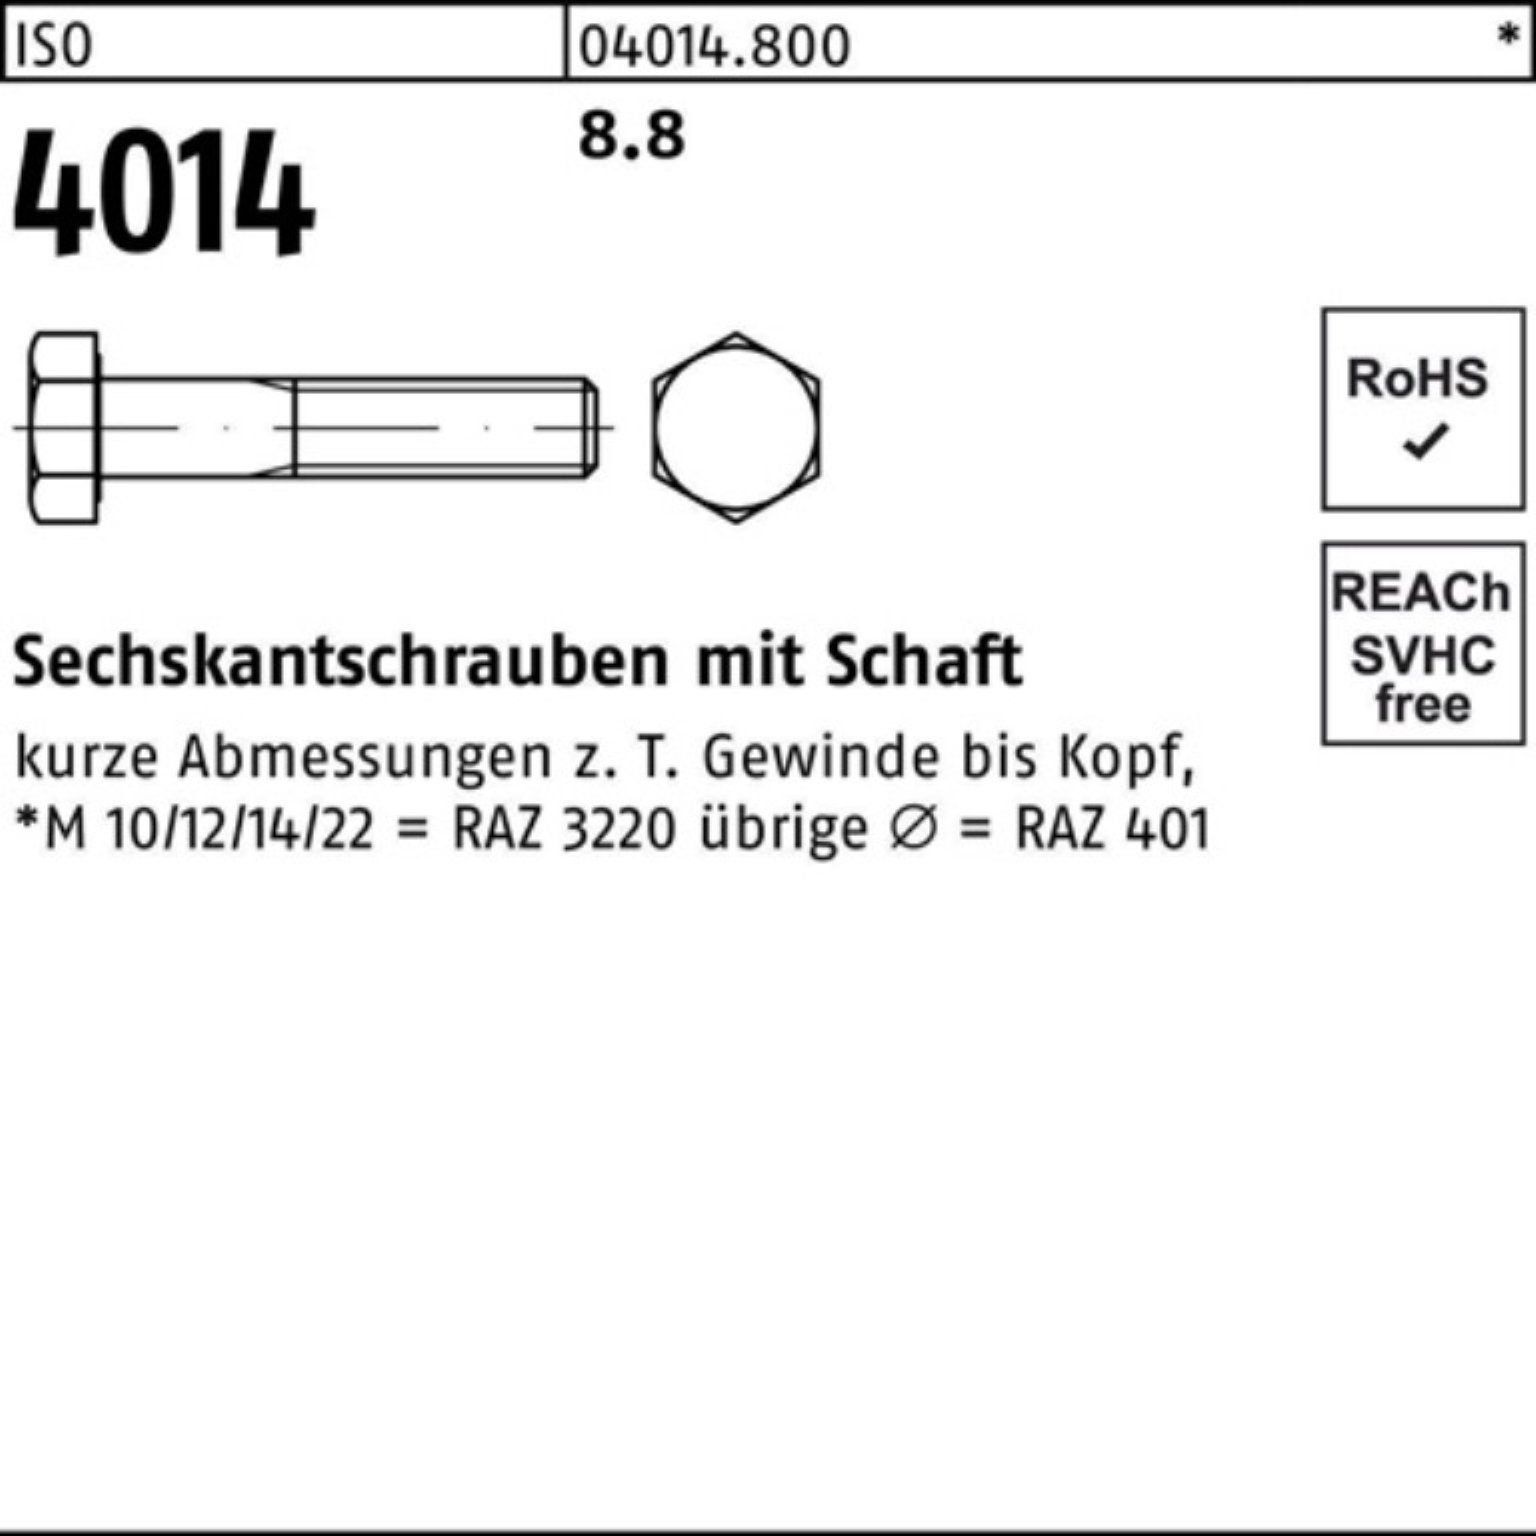 Sechskantschraube Bufab 4014 500 40 M3x Pack Schaft Stück ISO 500er Sechskantschraube 8.8 ISO